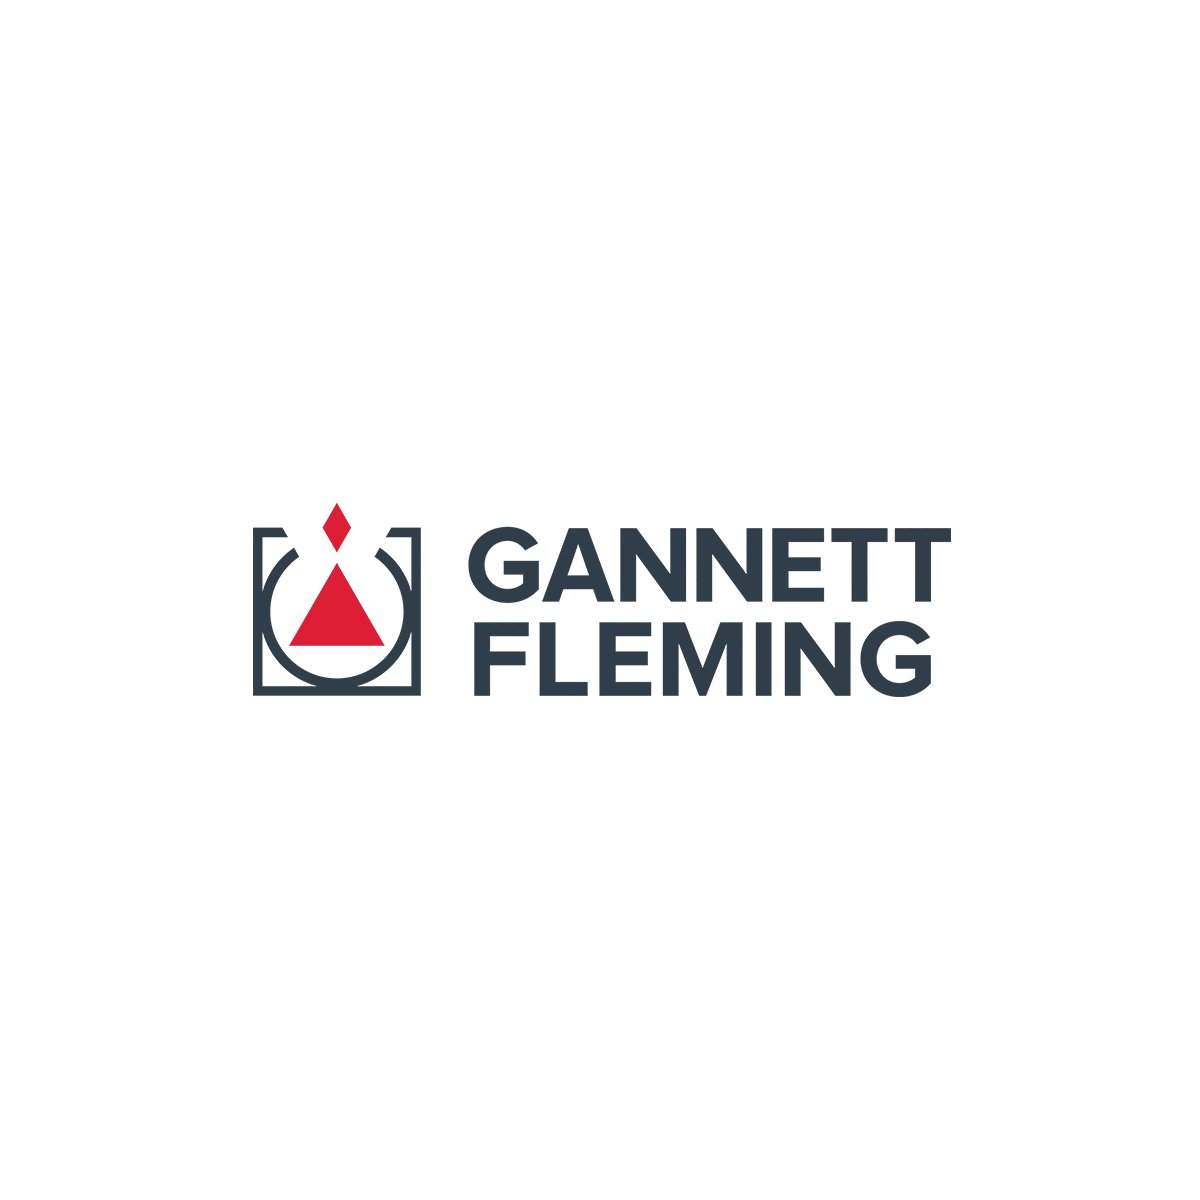 Gannett Fleming logo.jpg